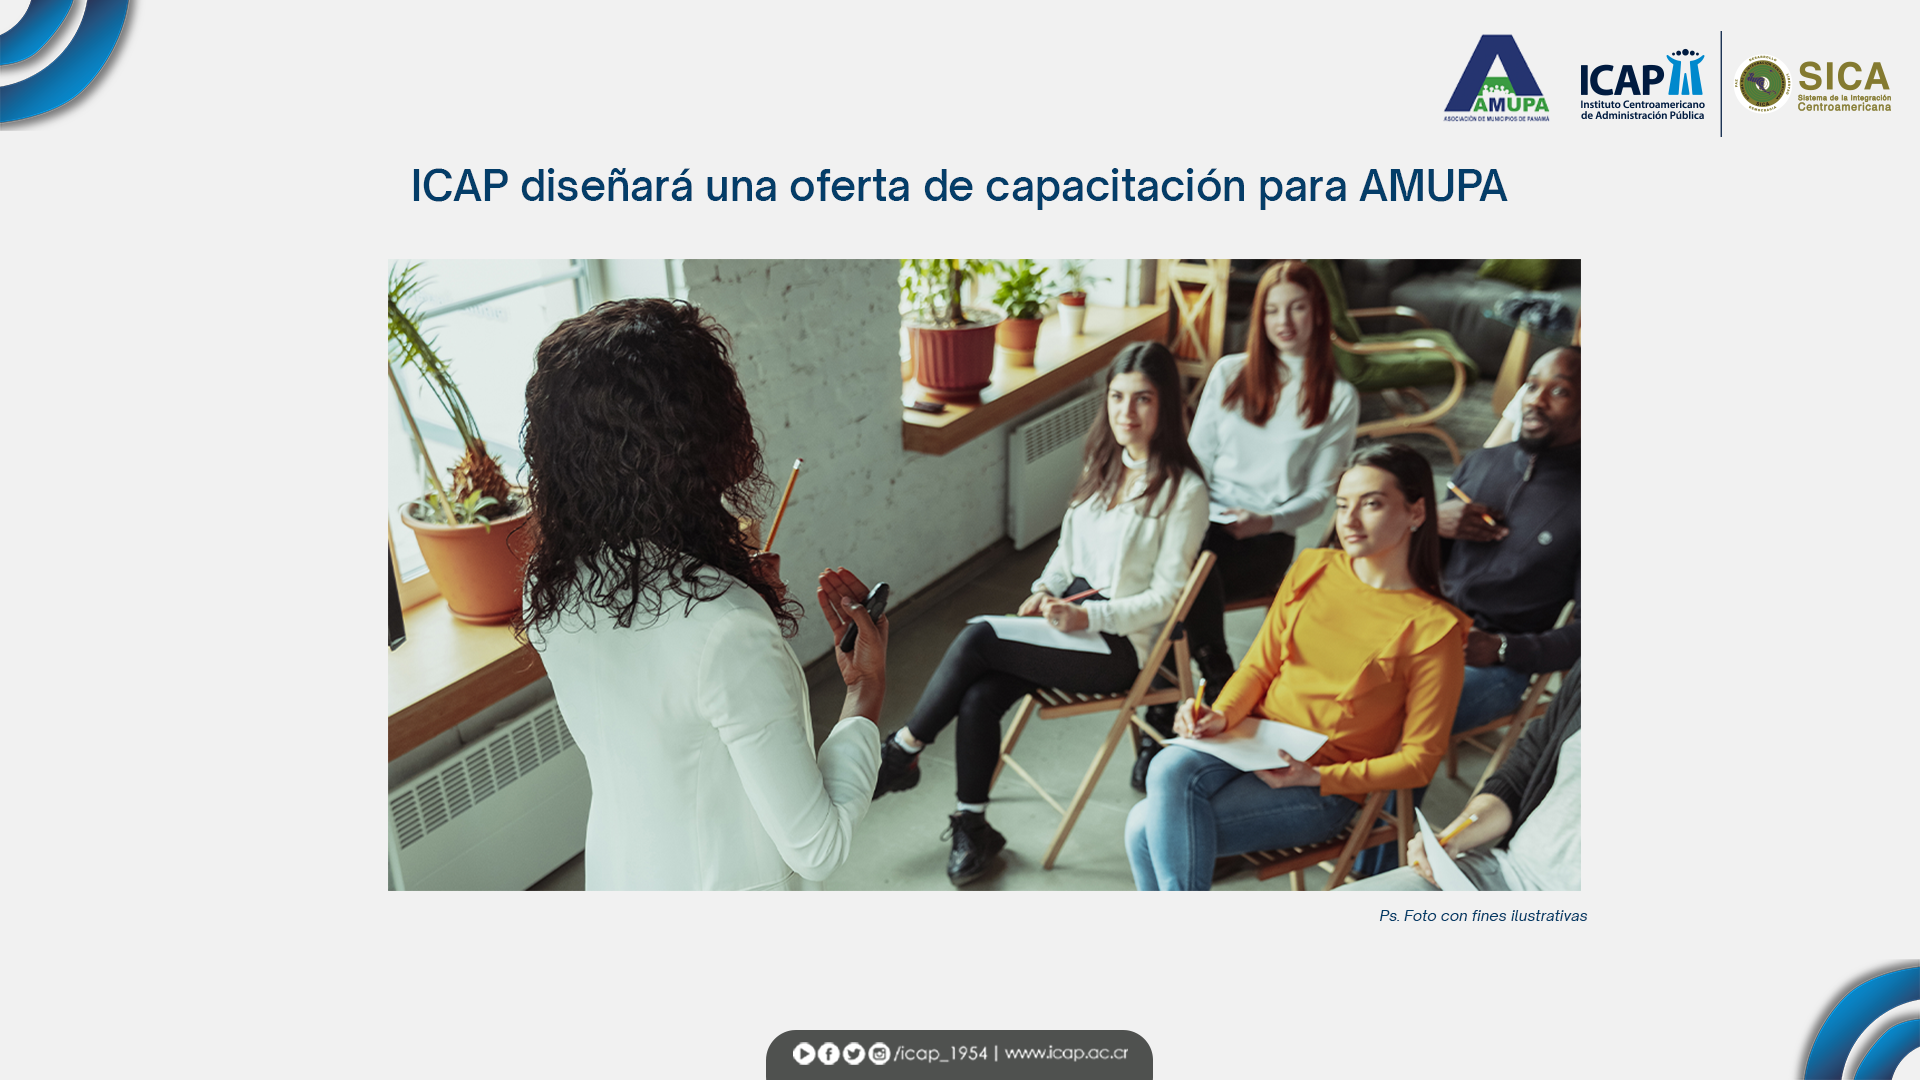 ICAP contribuirá en la capacitación y de formación de los municipios en Panamá